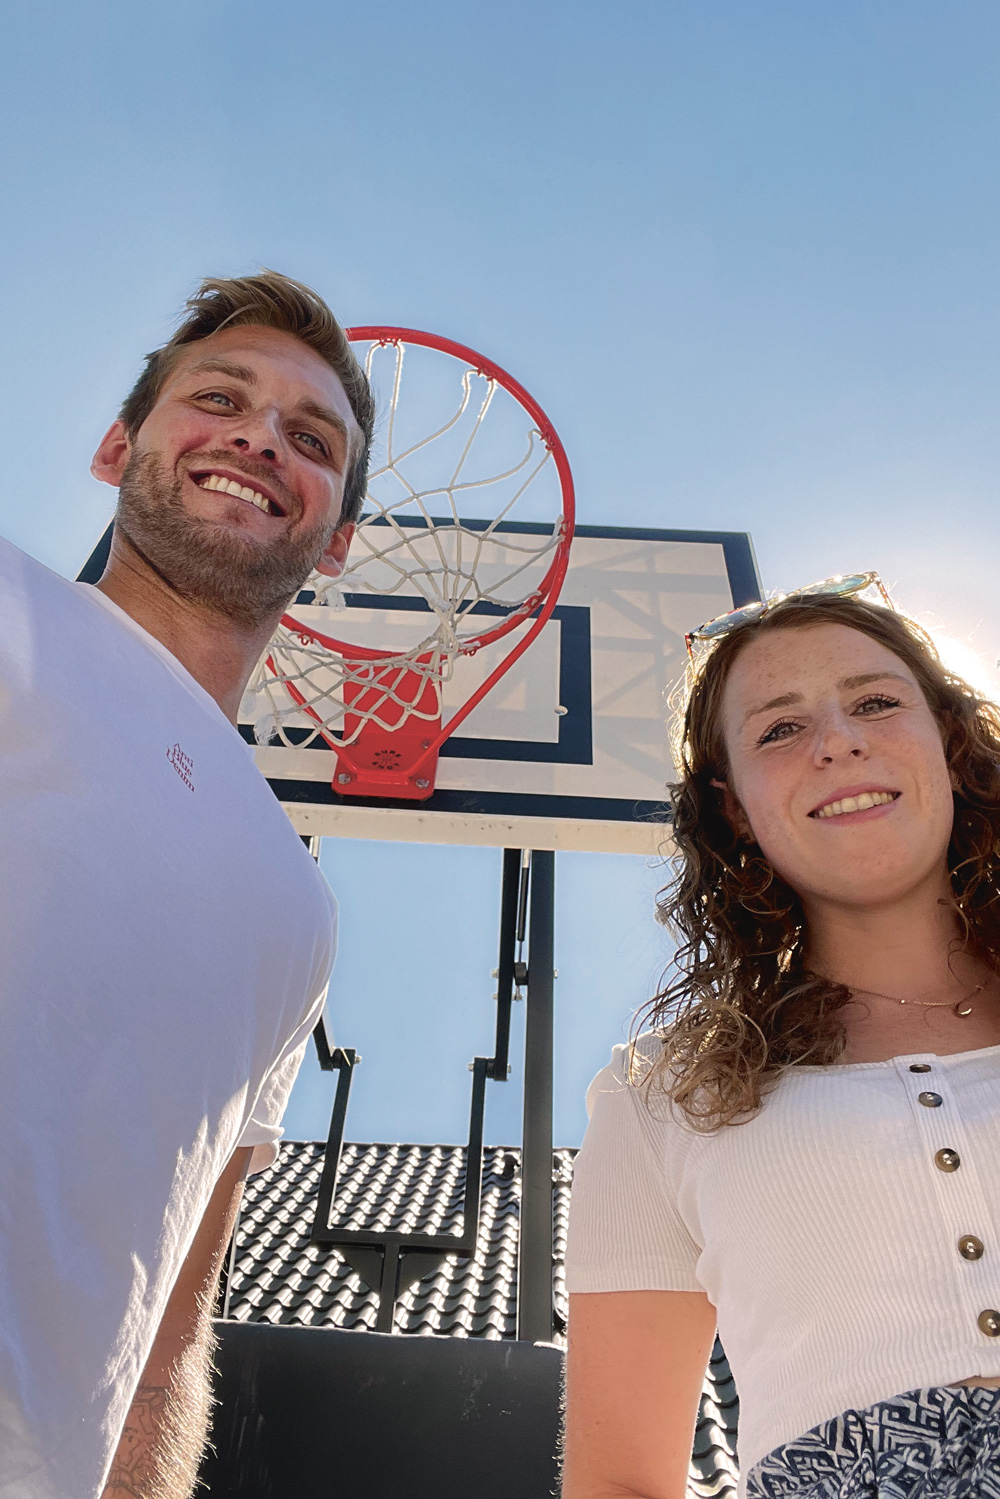 Das Bild zeigt einen Mann und eine Frau vor einem Basketballkorb.